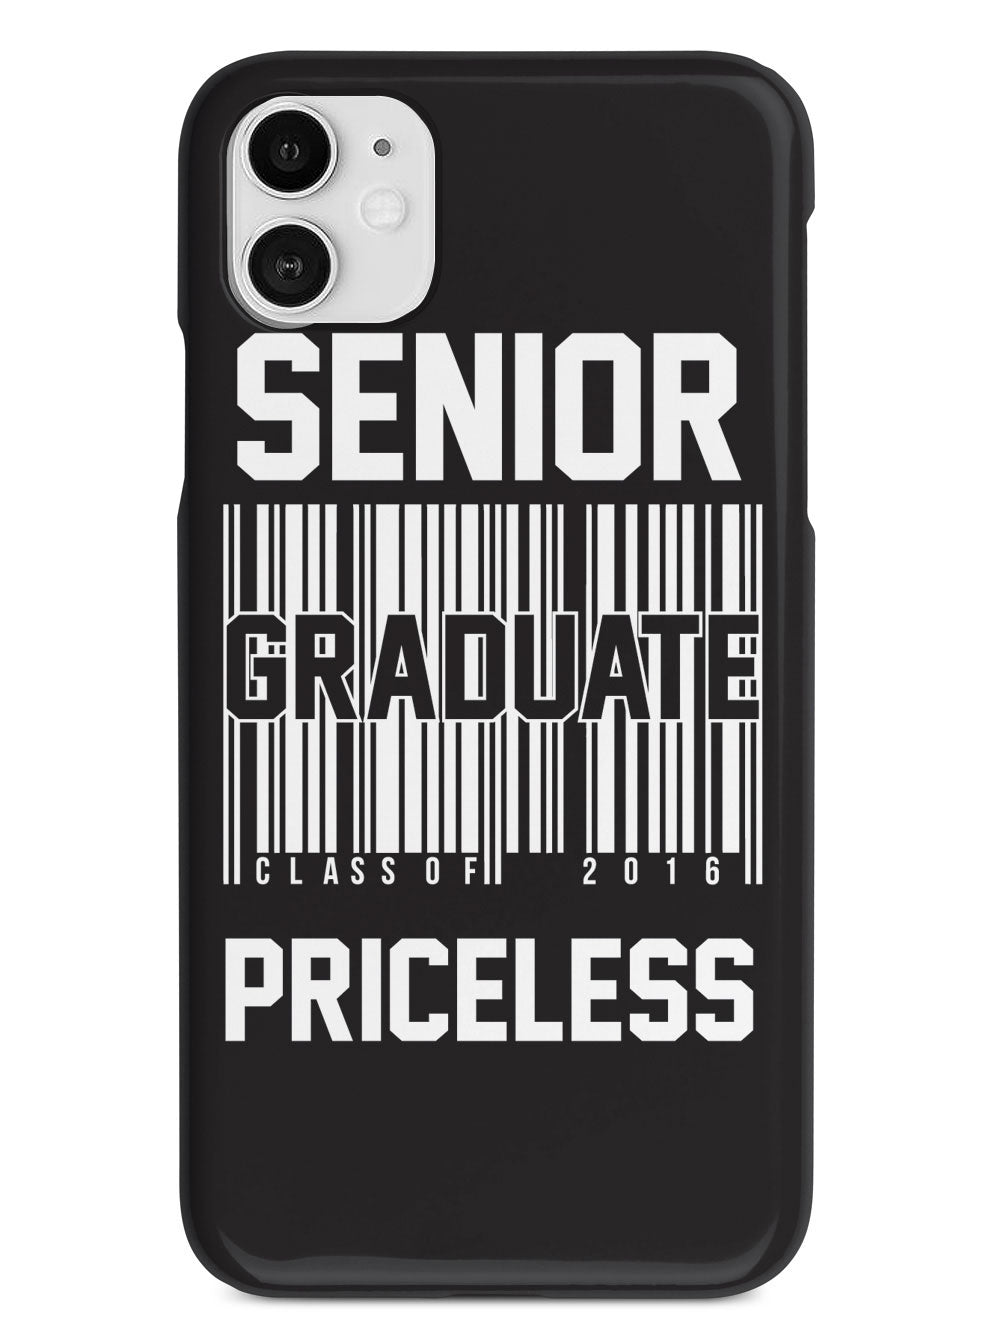 Senior Graduate - Priceless Case